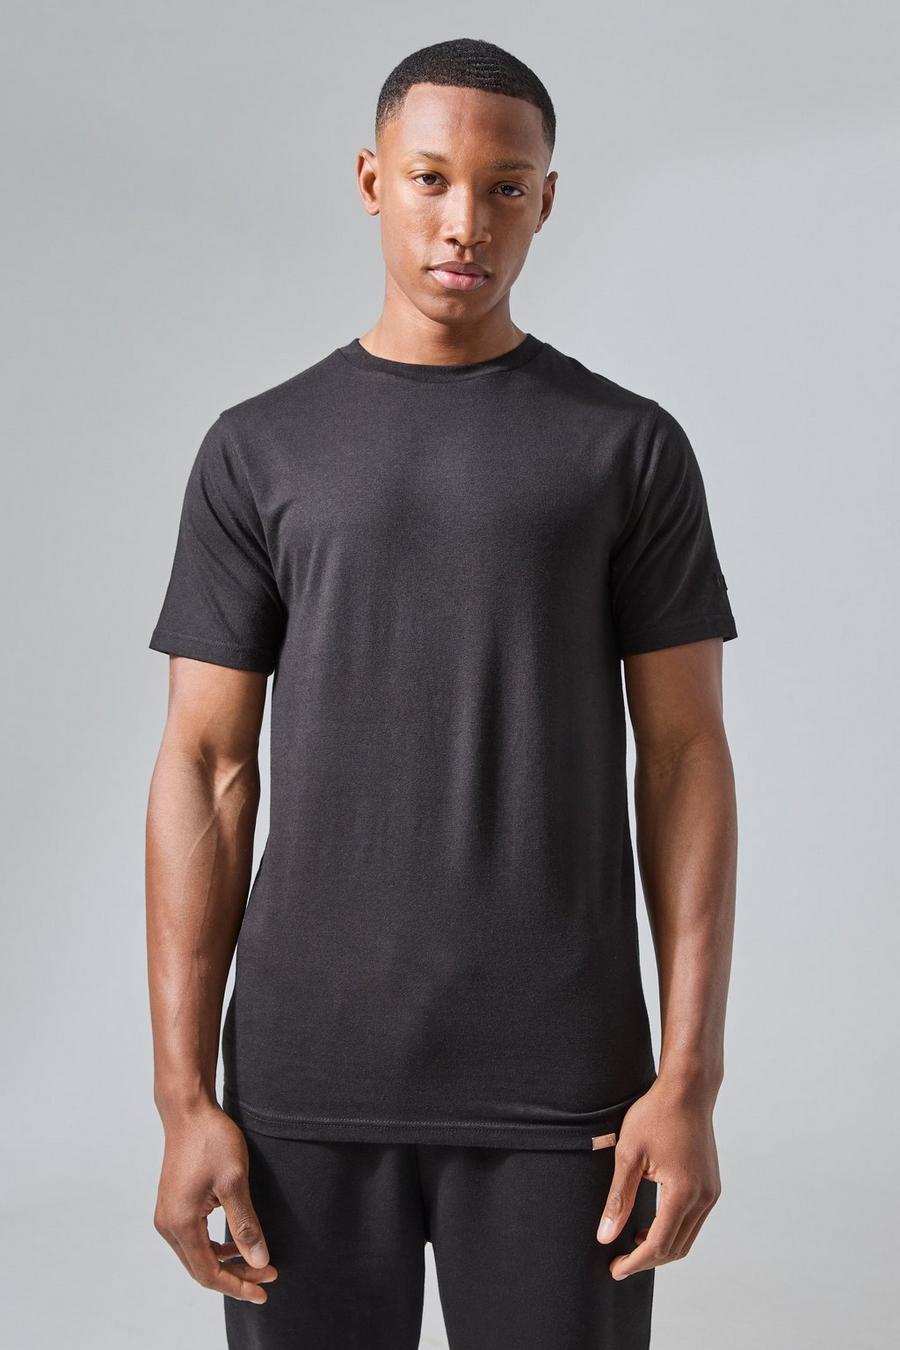 Black Man Active Rest Day Slim Fit T-shirt  image number 1